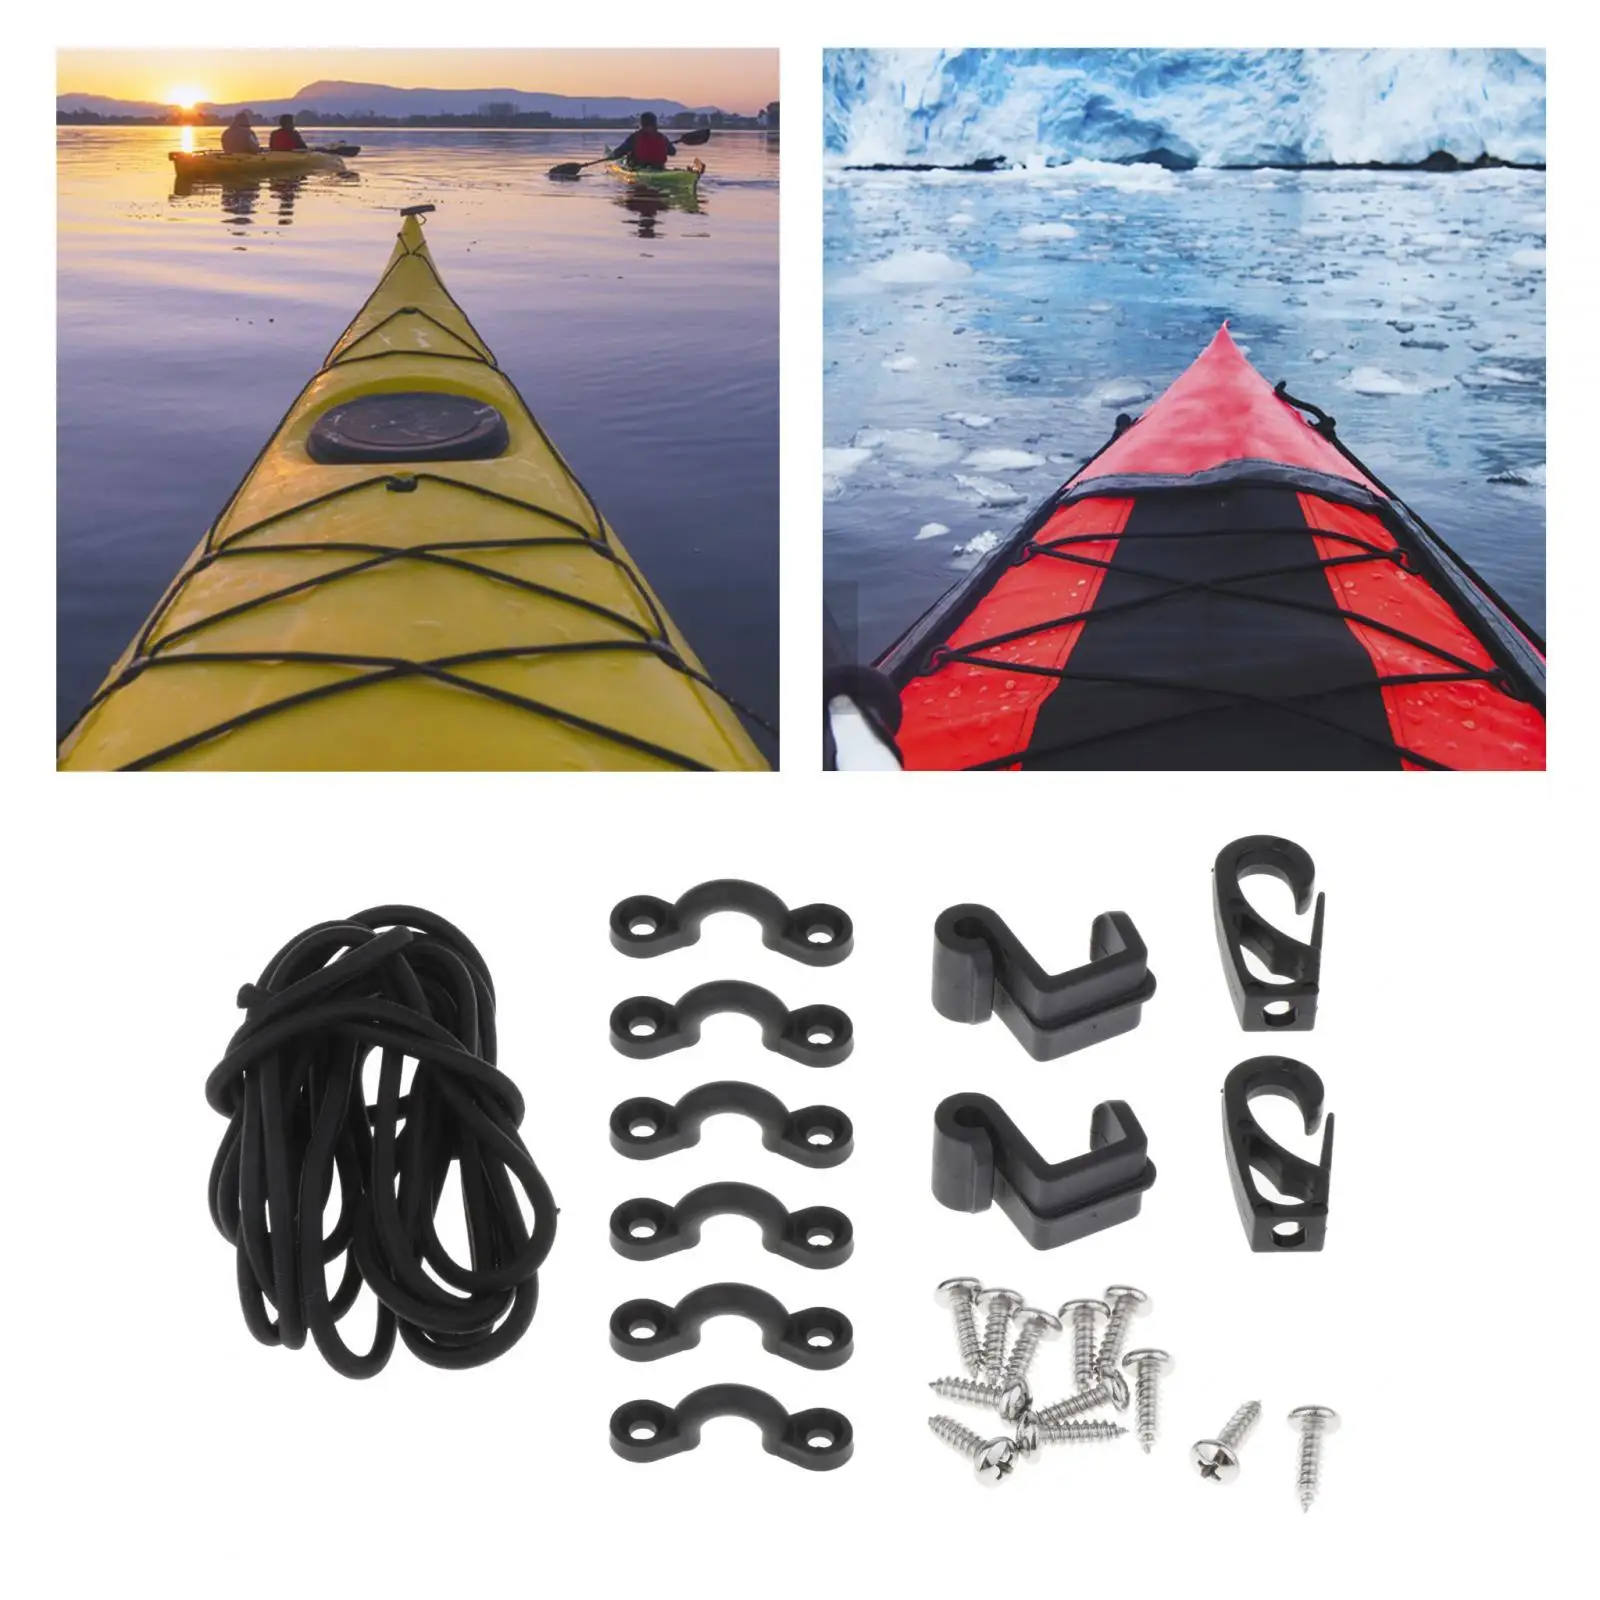 Kayak Deck Rigging Set Boat Awning Hardware Accessories Canoes Premium Kayak Rigging Boat Fishing Storage Bungee Set with Screws